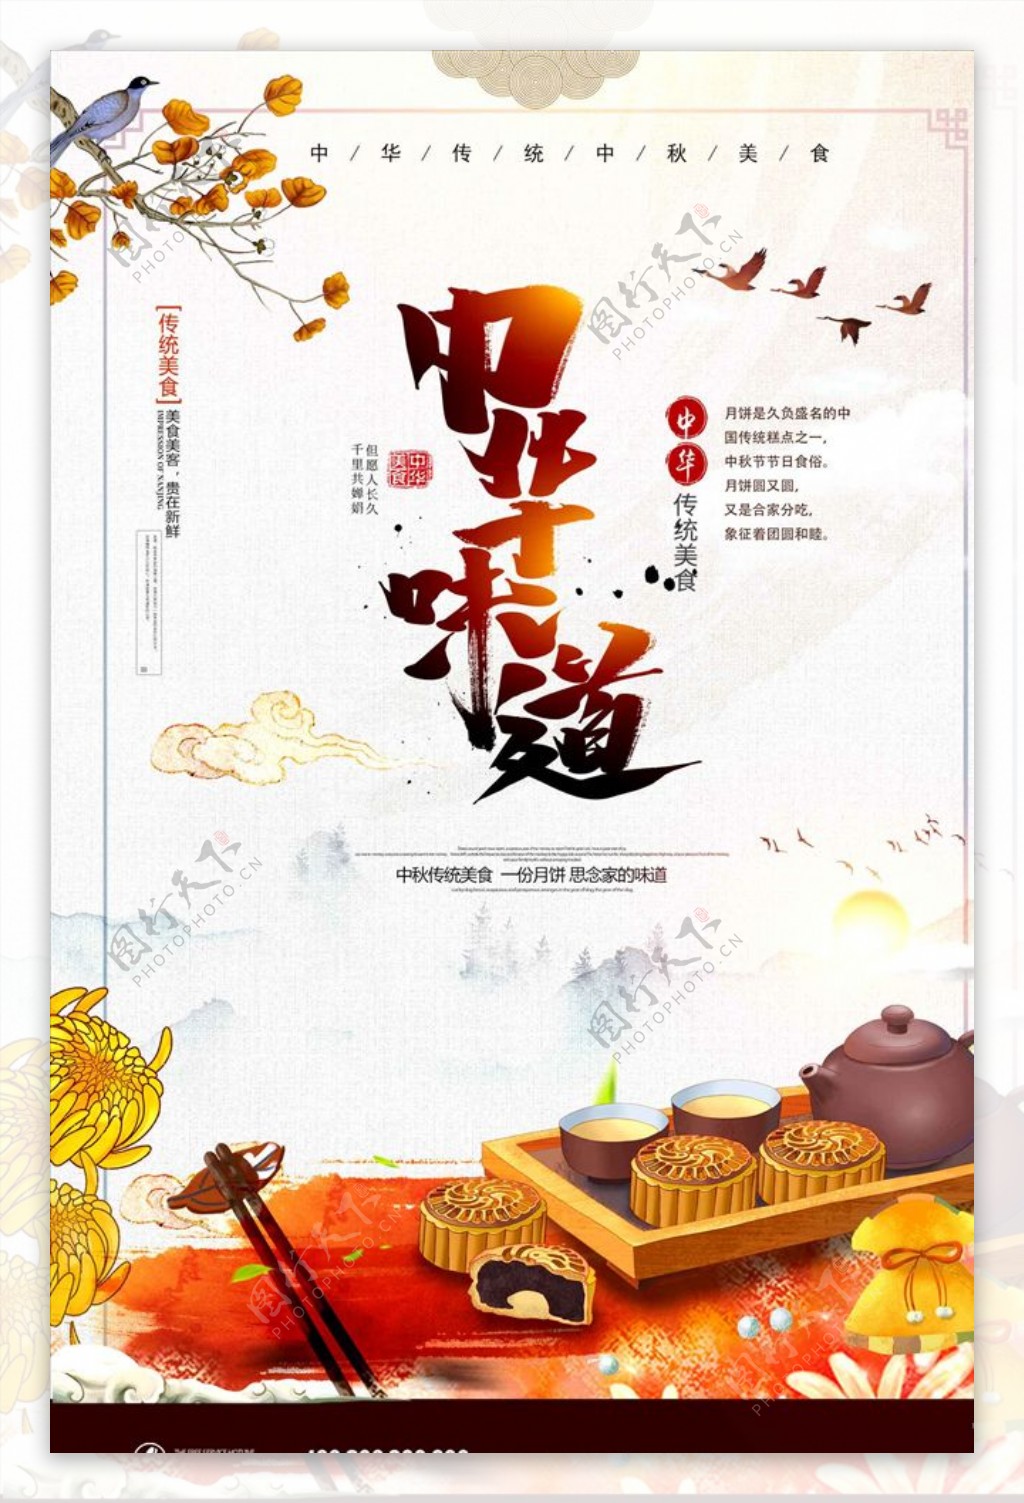 中国风中华味道中秋月饼宣传海报